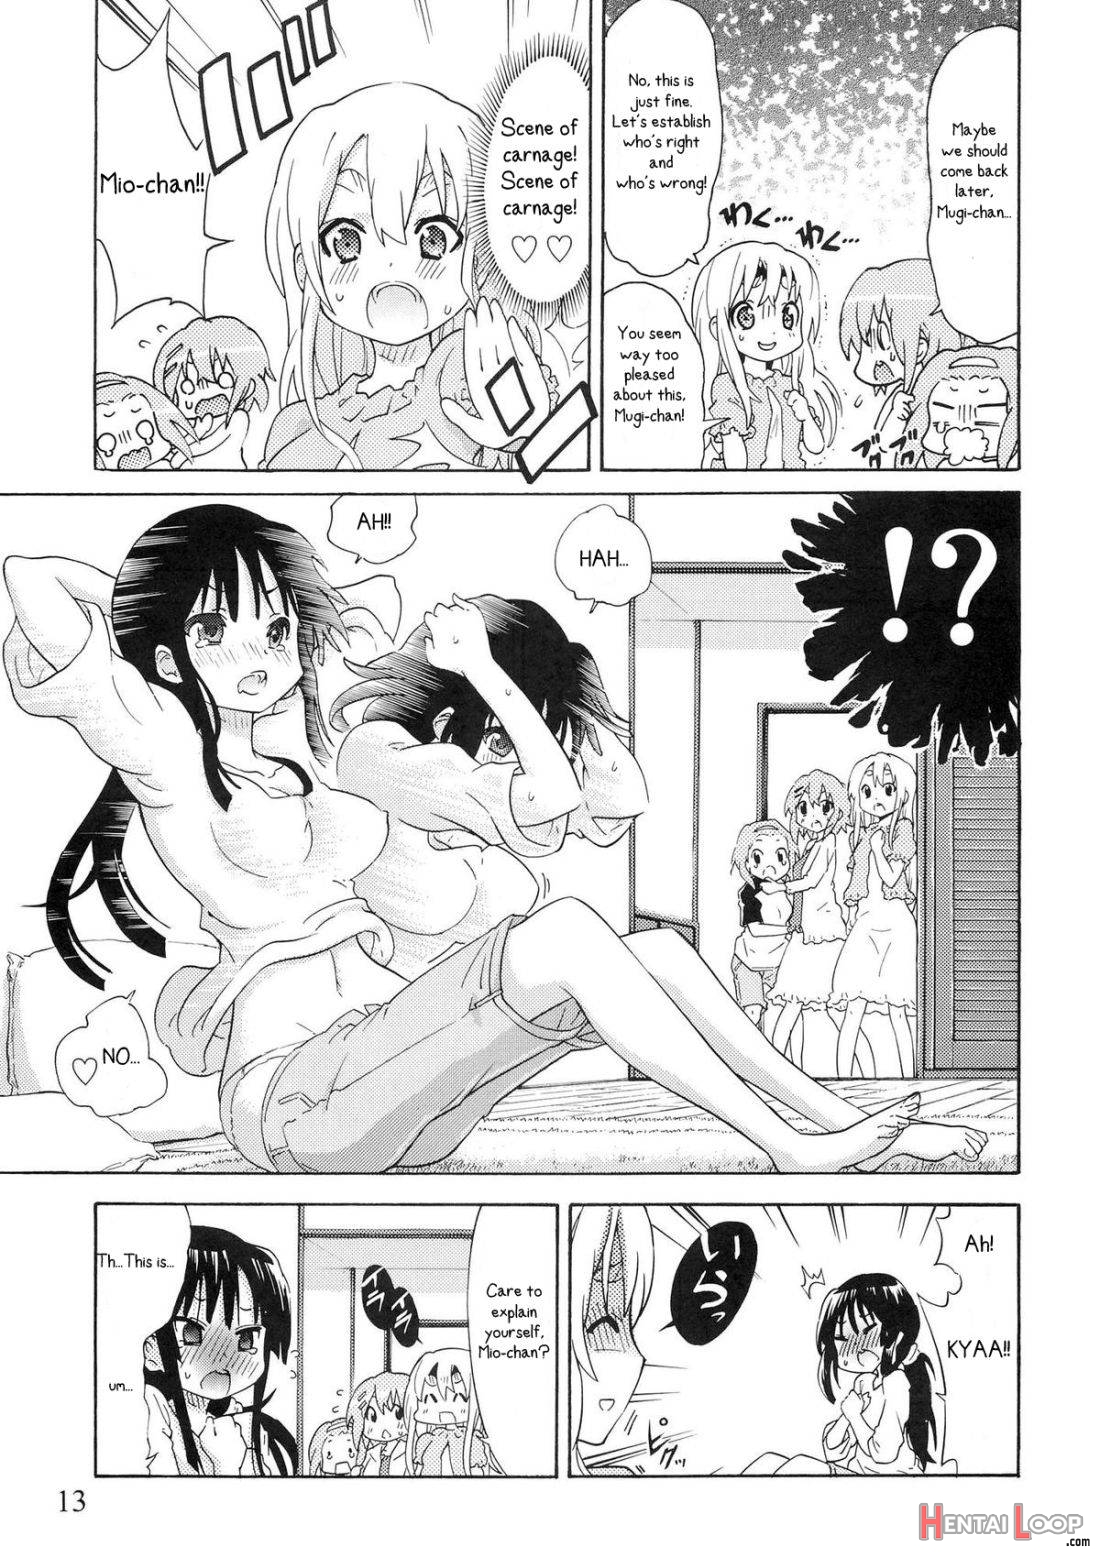 Yuri-on! #2 “kosokoso Mio-chan!” page 11